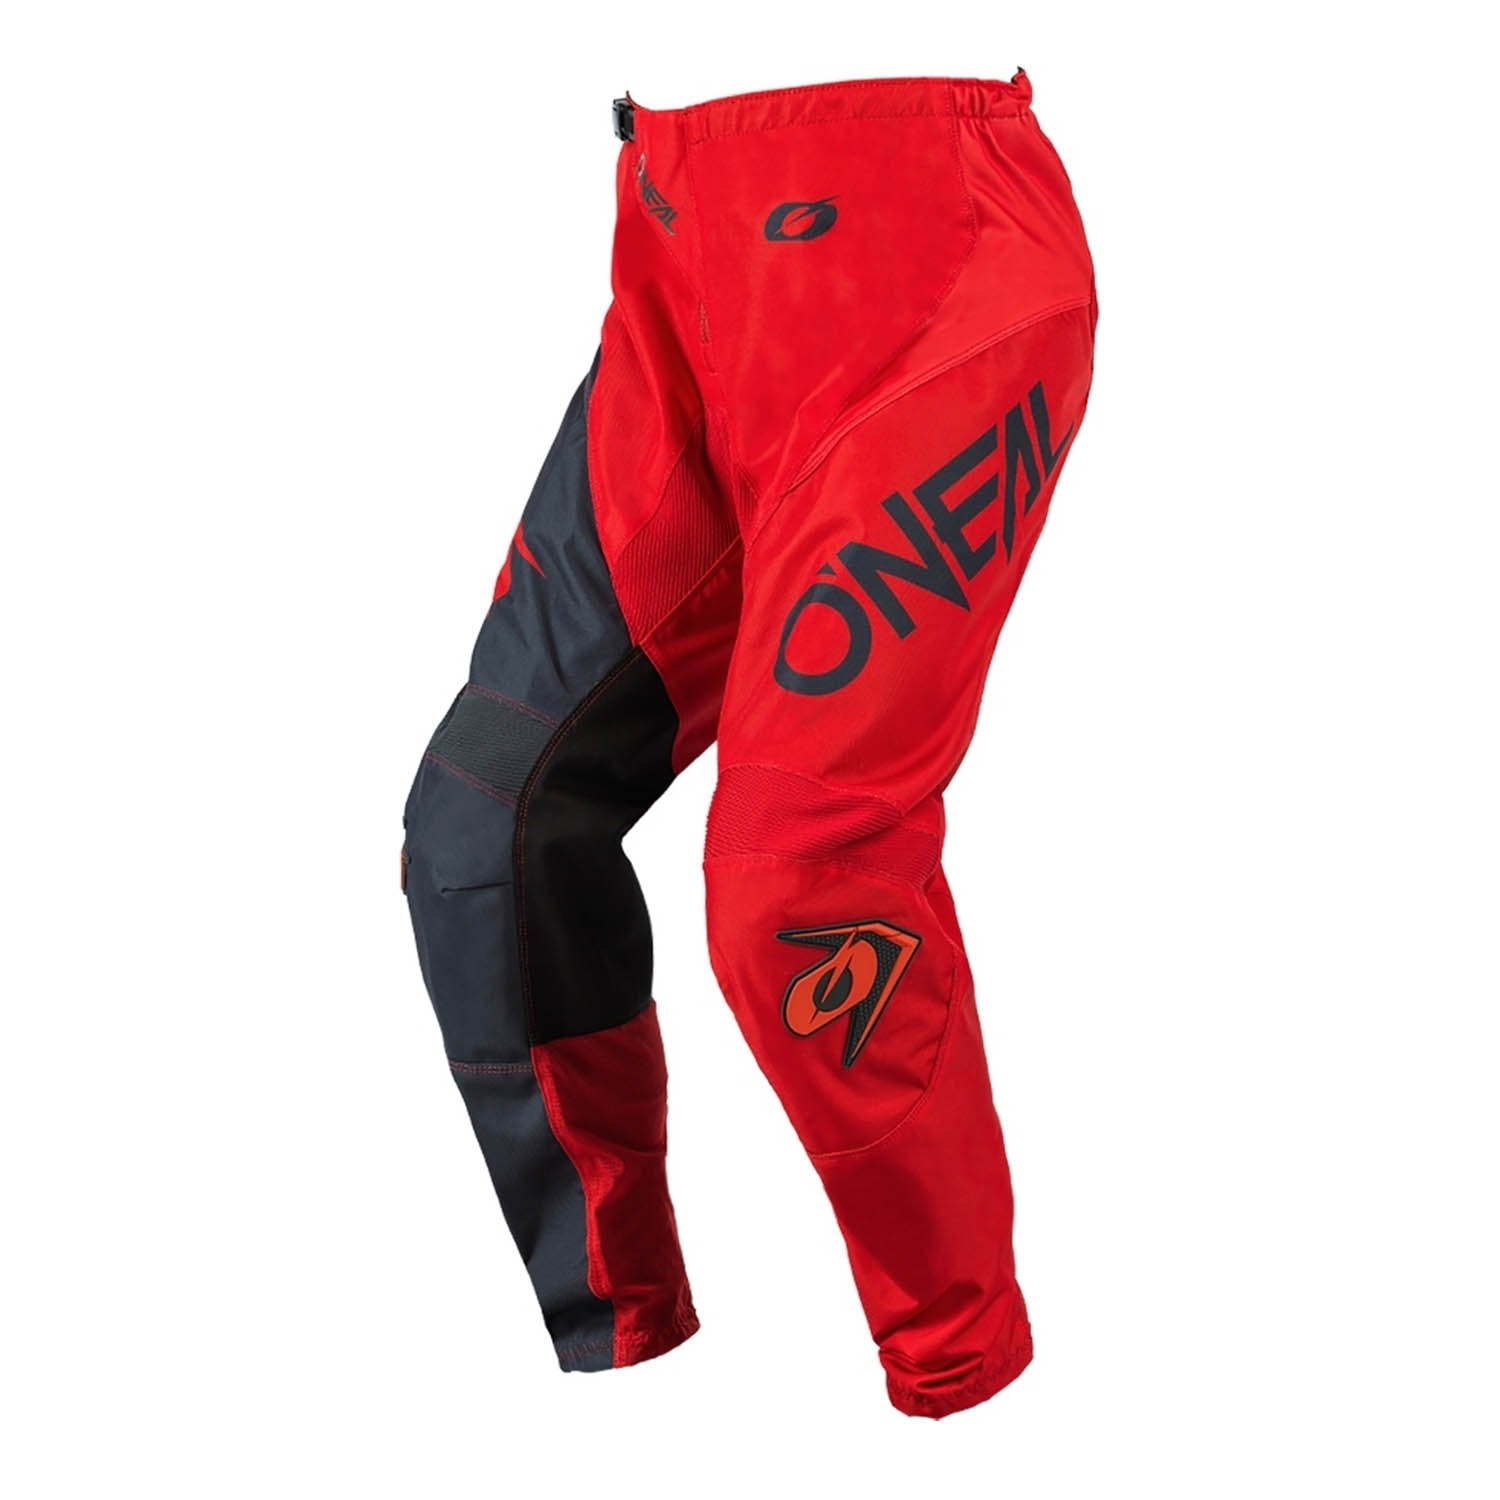 Штаны для мотокросса O'NEAL ELEMENT PANTS RACEWEAR красно-серого цвета, вид сзади купить по низкой цене